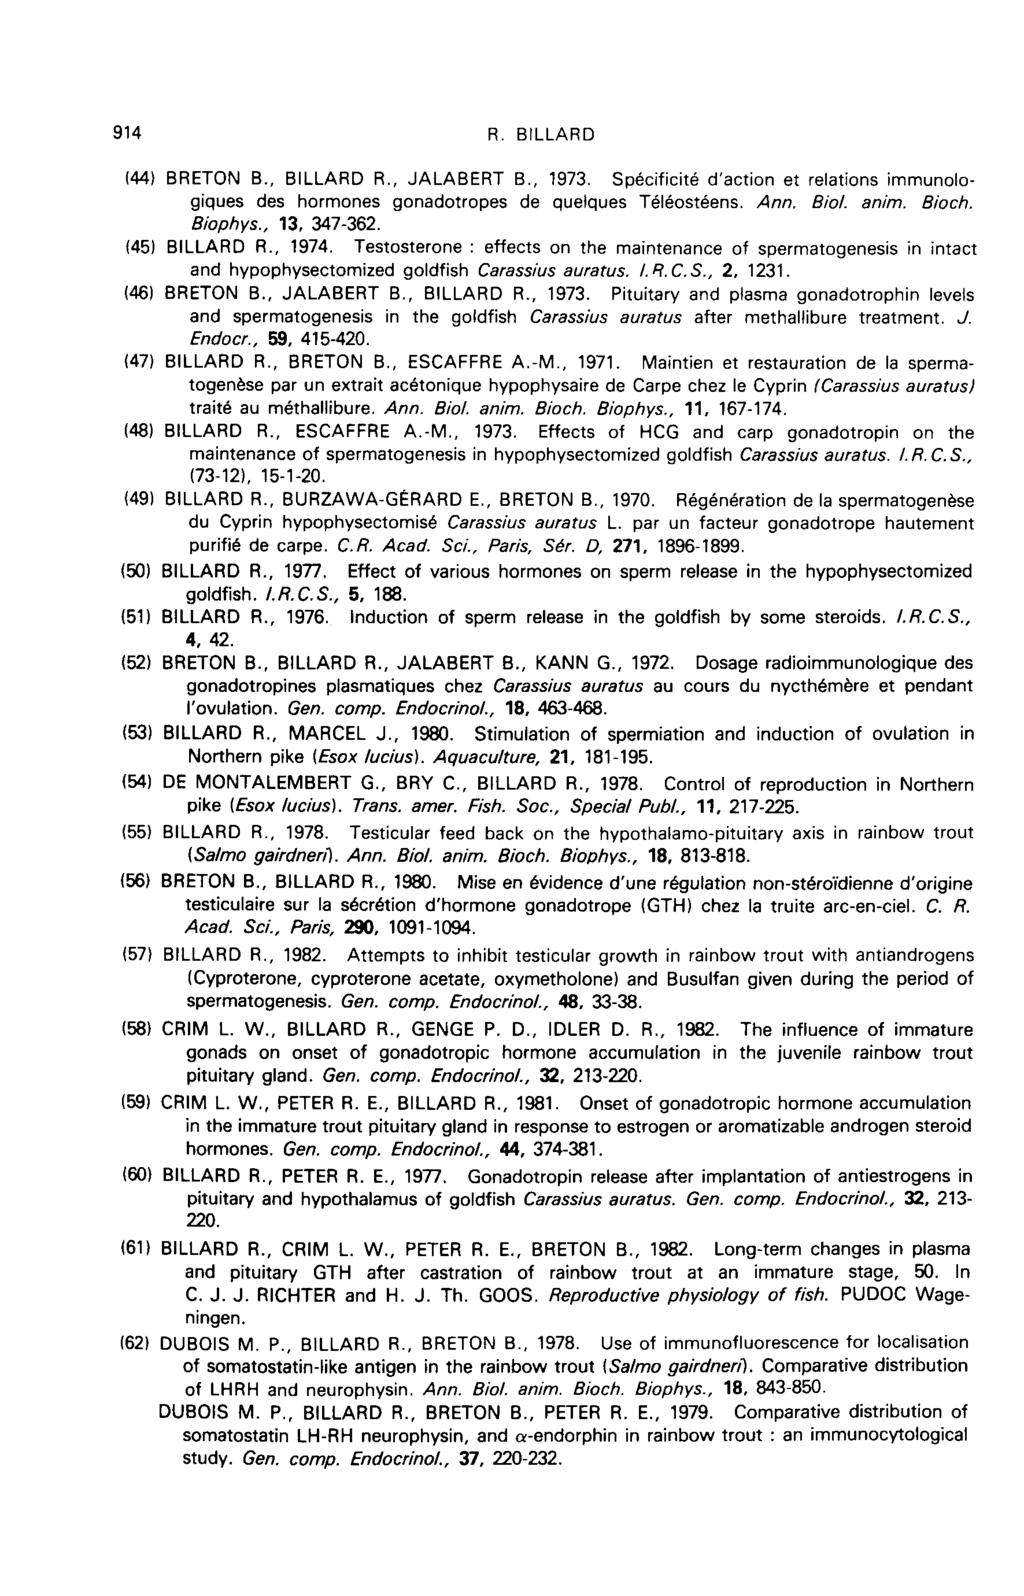 (44) BRETON B., BILLARD R., JALABERT B., 1973. Specificite d action et relations immunologiques des hormones gonadotropes de quelques T616ost6ens. Ann. Biol. anim. Bioch. Biophys., 13, 347-362.